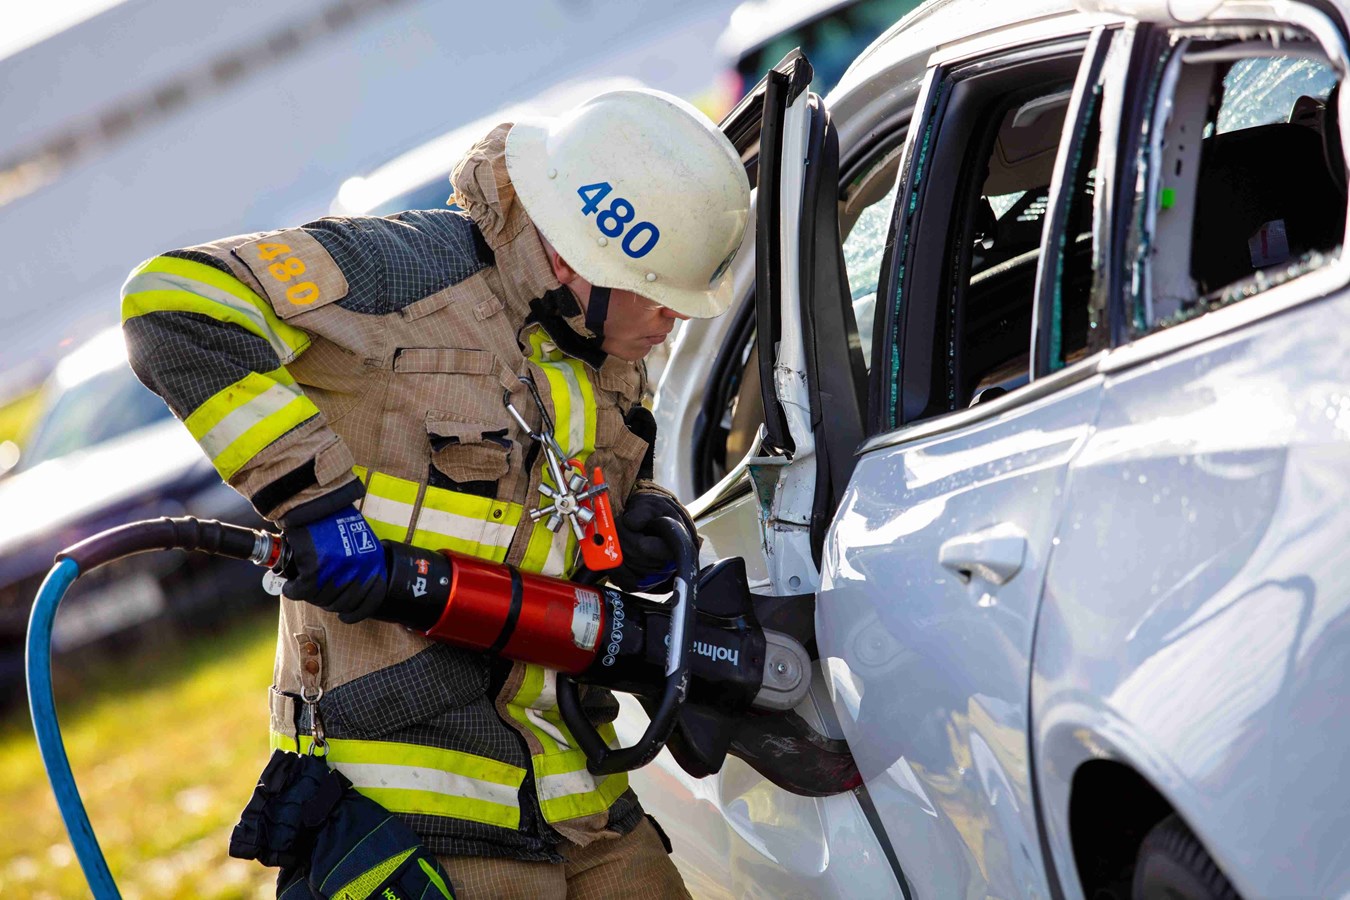 沃尔沃汽车安全中心的救援专家进行救生技能训练